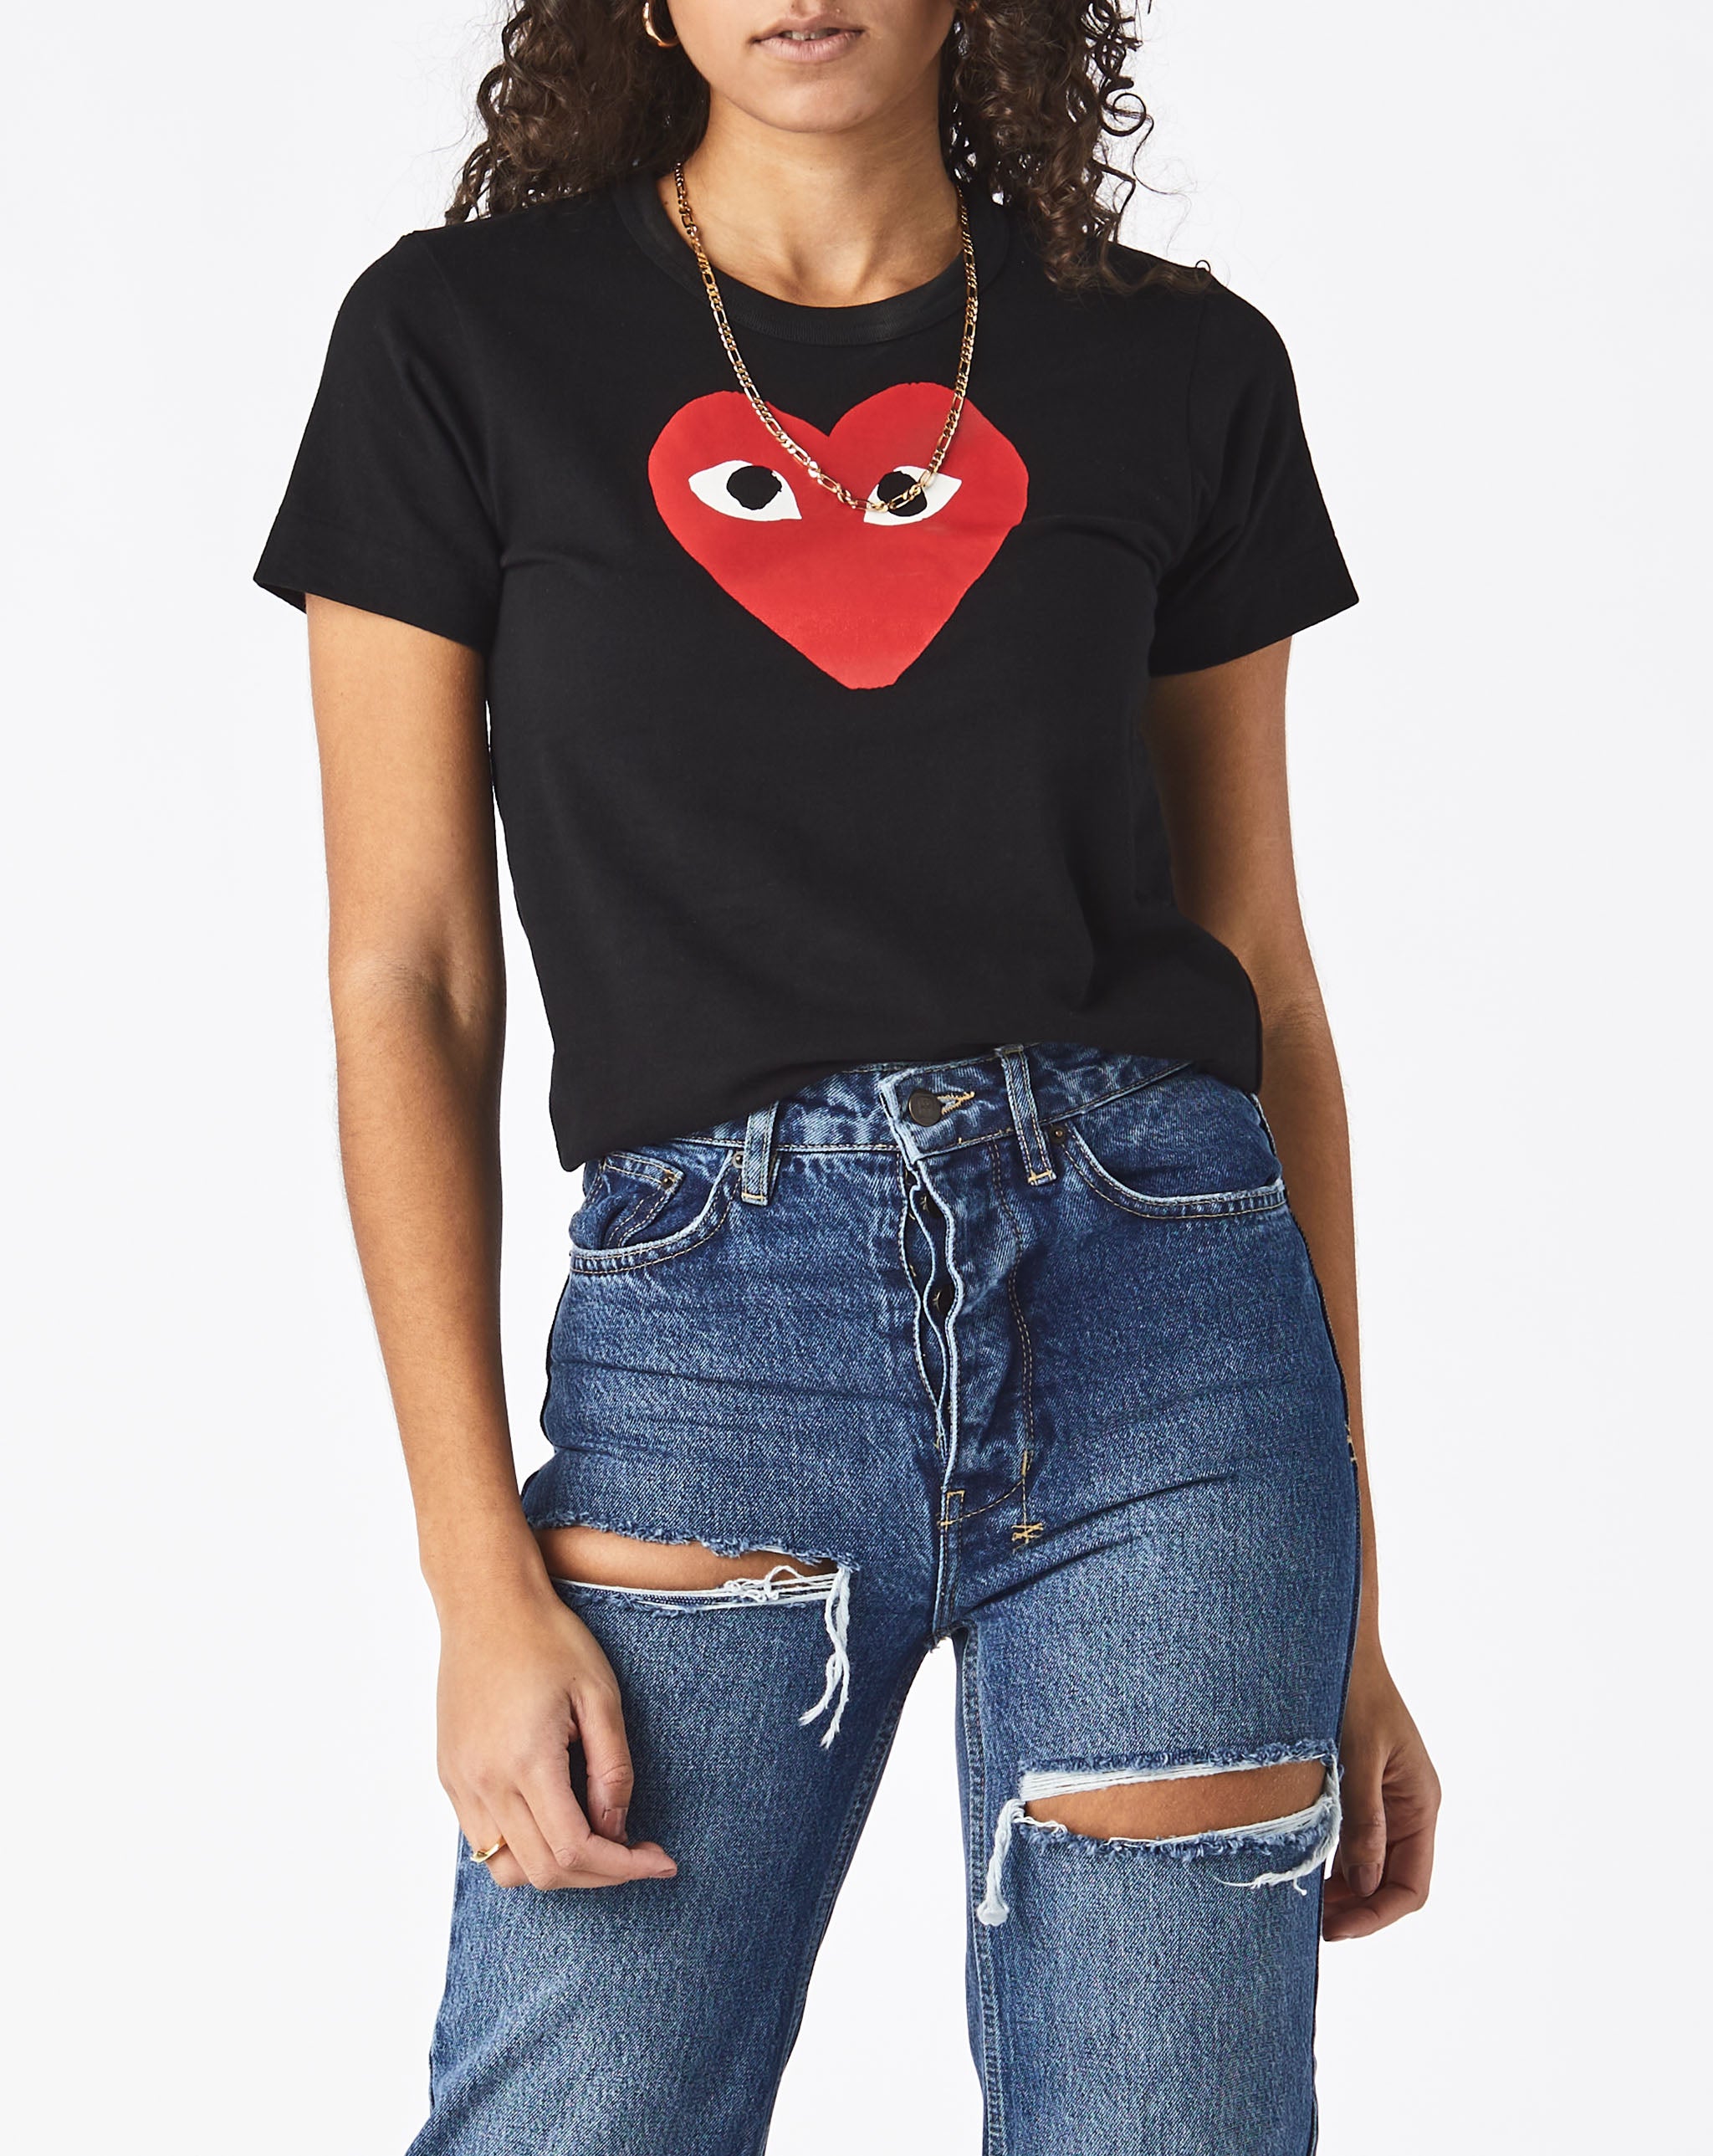 Womens Double Camo Heart T-Shirt Women's Play T-Shirt  - Cheap Urlfreeze Jordan outlet